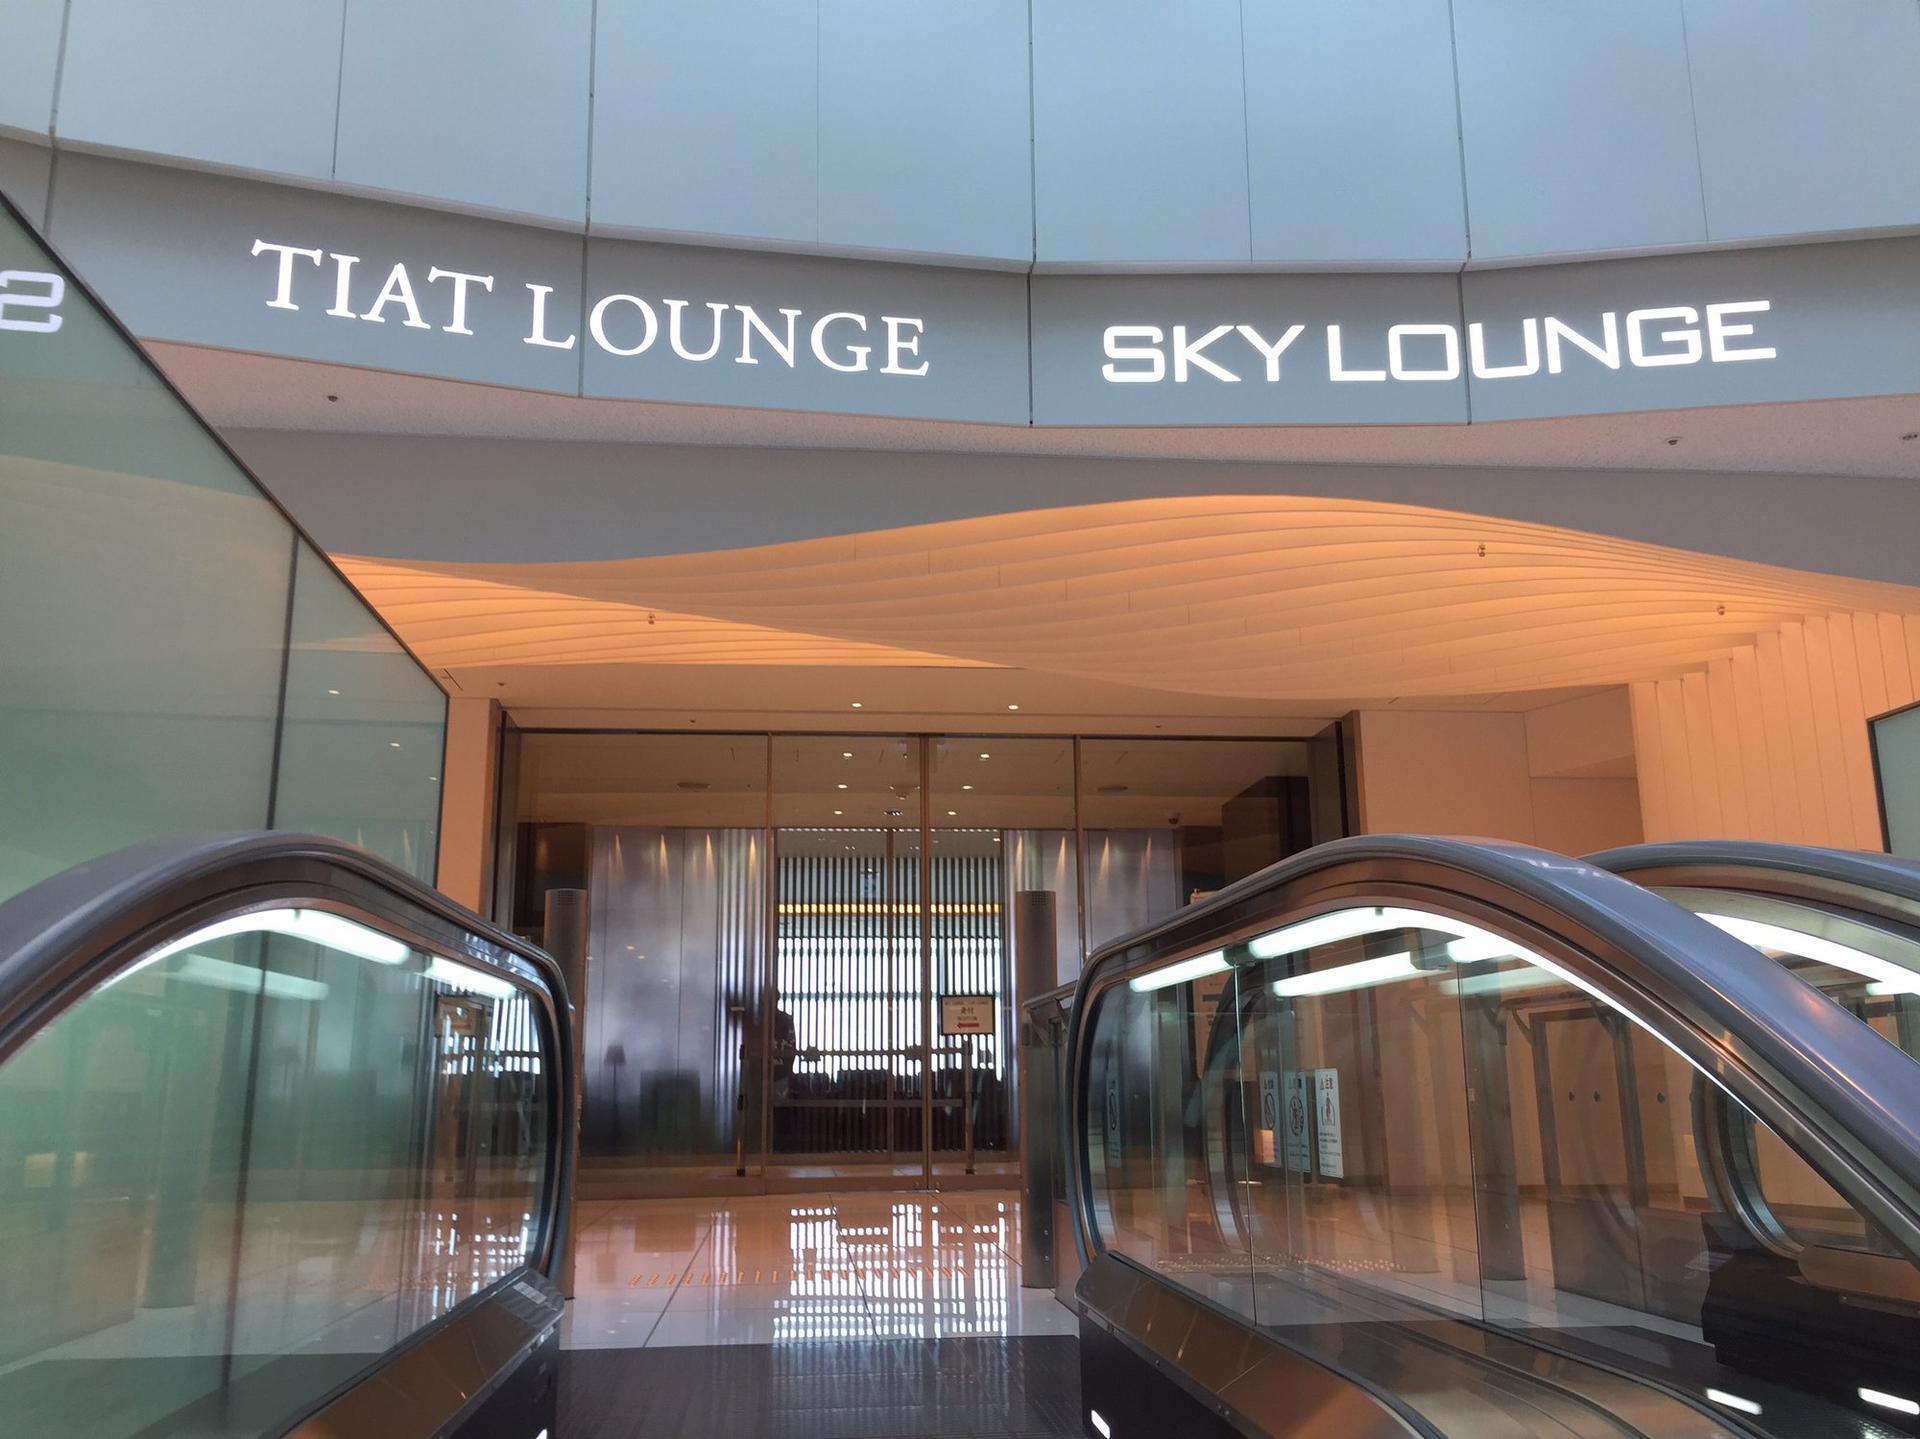 TIAT Lounge image 1 of 1